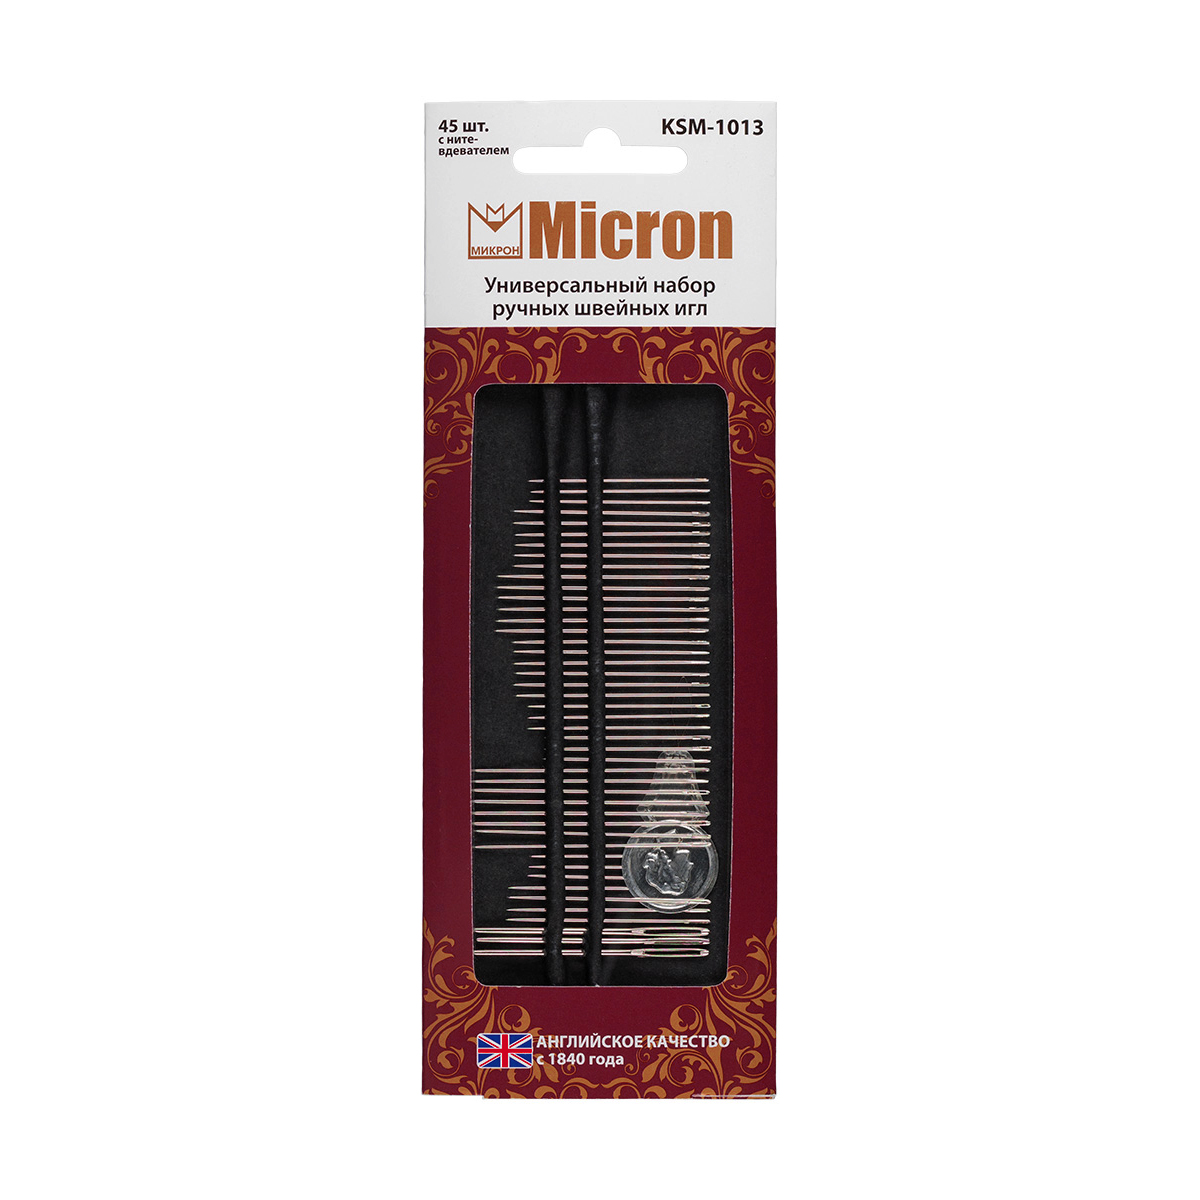 Иглы для шитья ручные "Micron" KSM-1013 универсальный набор швейных игл 45 шт. в блистере .